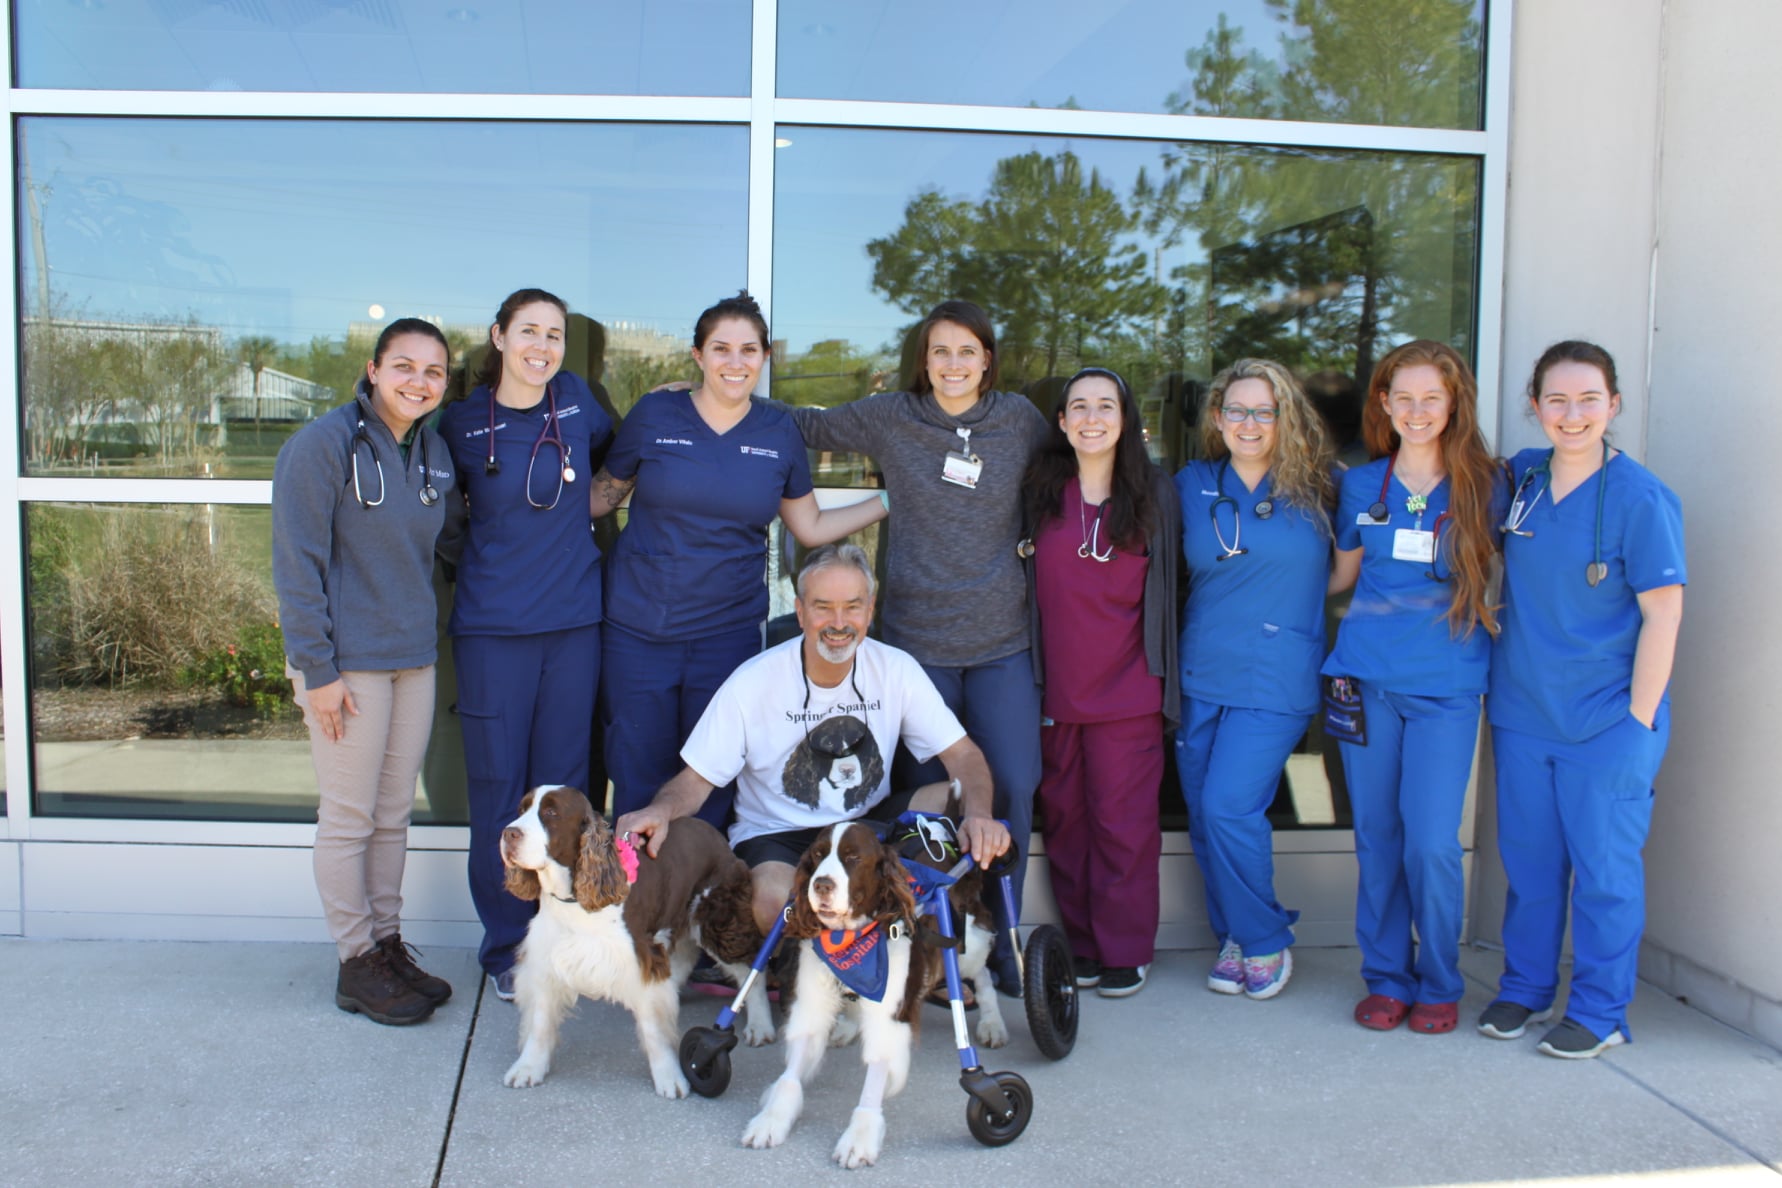 Curado de doença, cão ganha surpresa emocionante de equipe médica